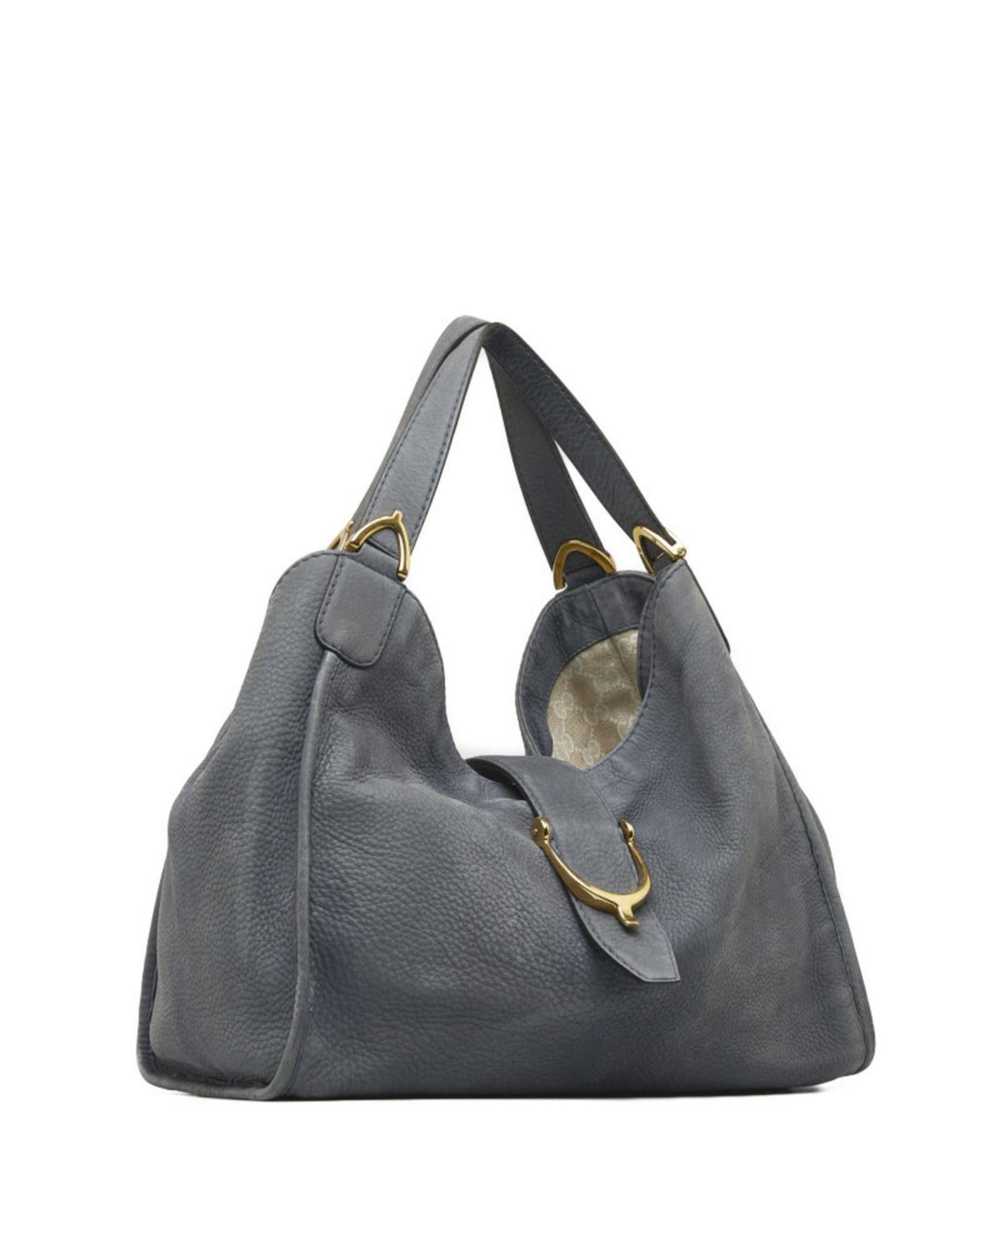 Gucci Luxury Soft Leather Shoulder Bag - image 2